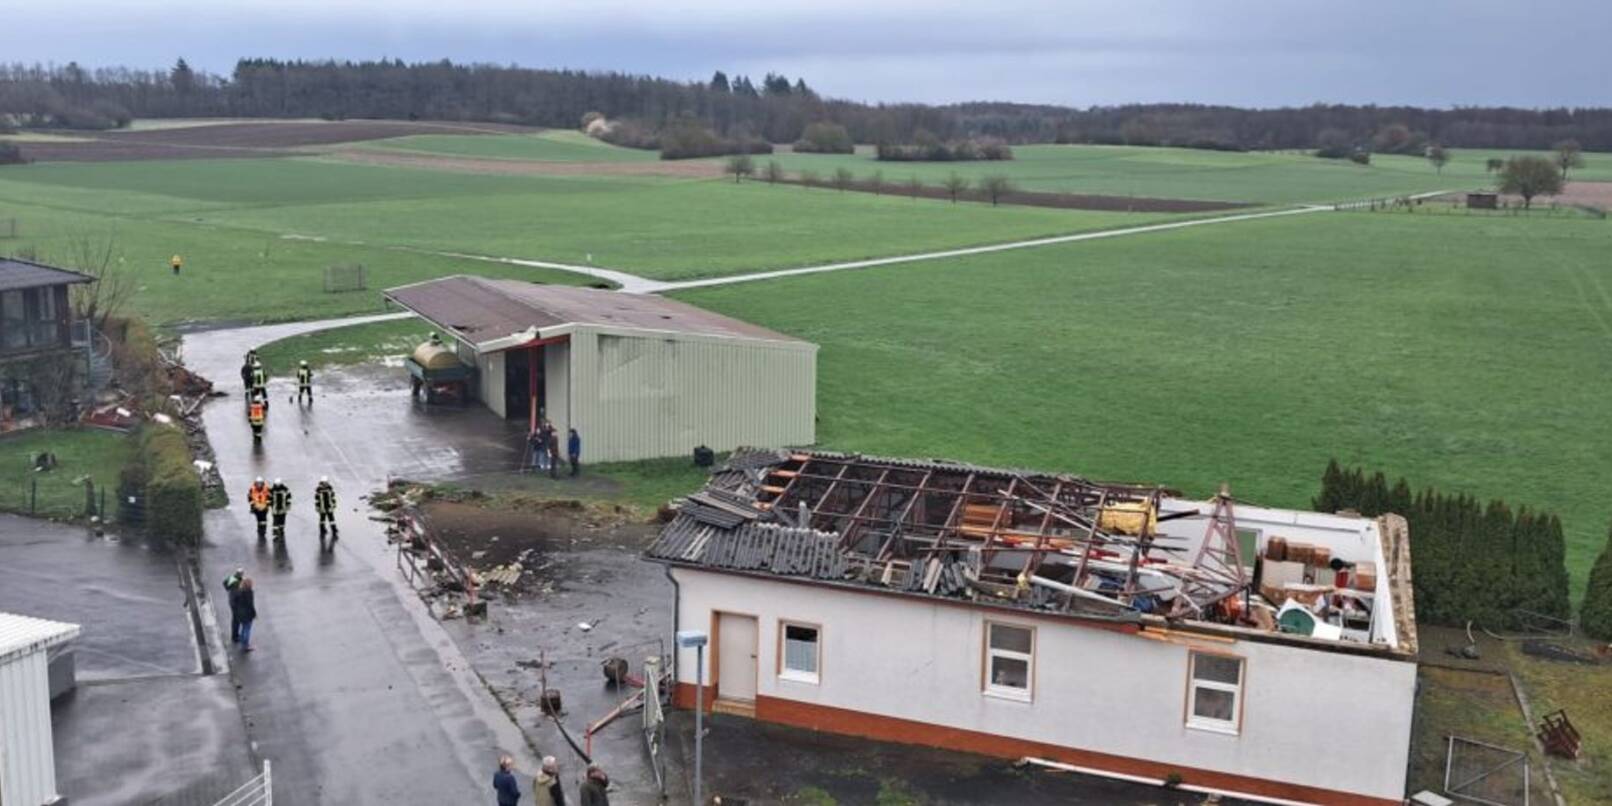 Die von der Feuerwehr Fernwald-Annerod zur VErfügung gestellte Aufnahme zeigt ein beschädigtes Dach in der Gemeinde Fernwald im mittelhessischen Landkreis Gießen.